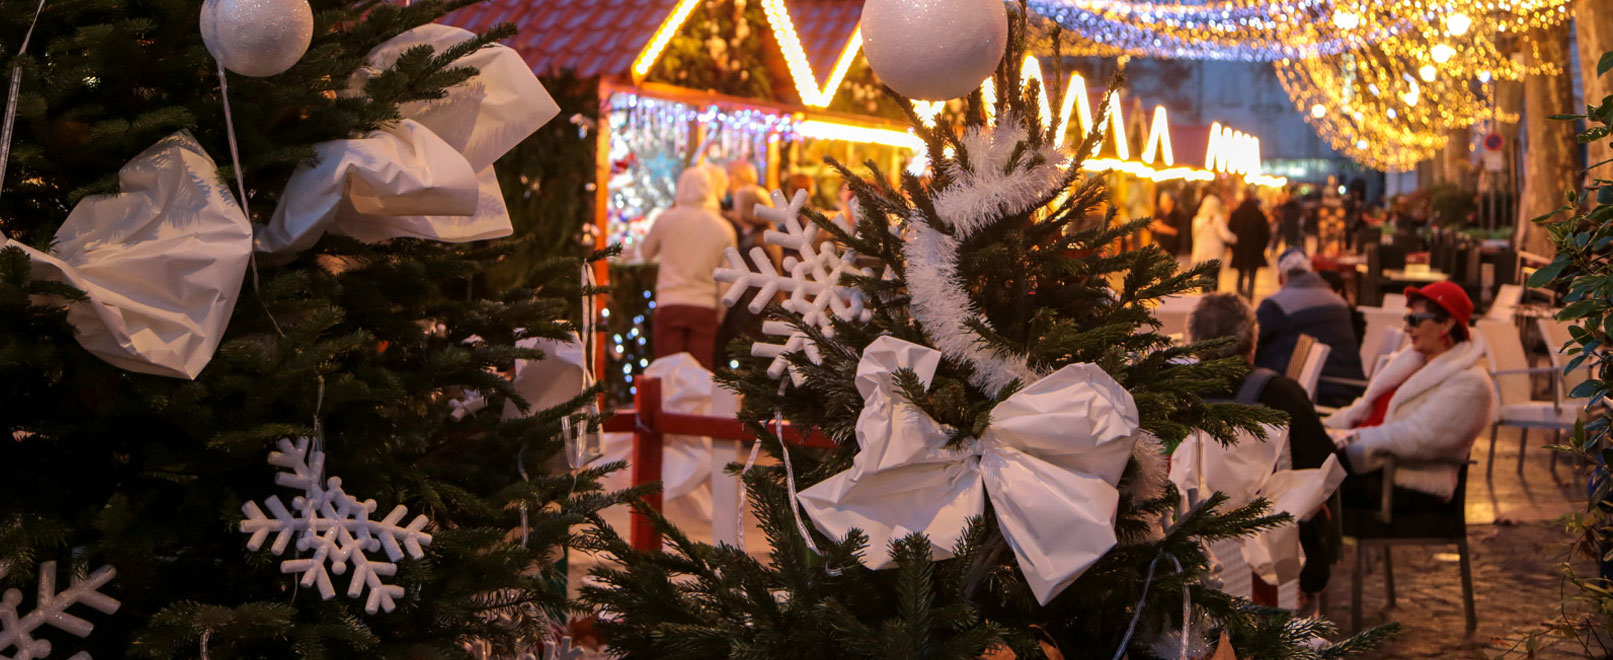 Mercados de Navidad en la Provenza © Hocquel